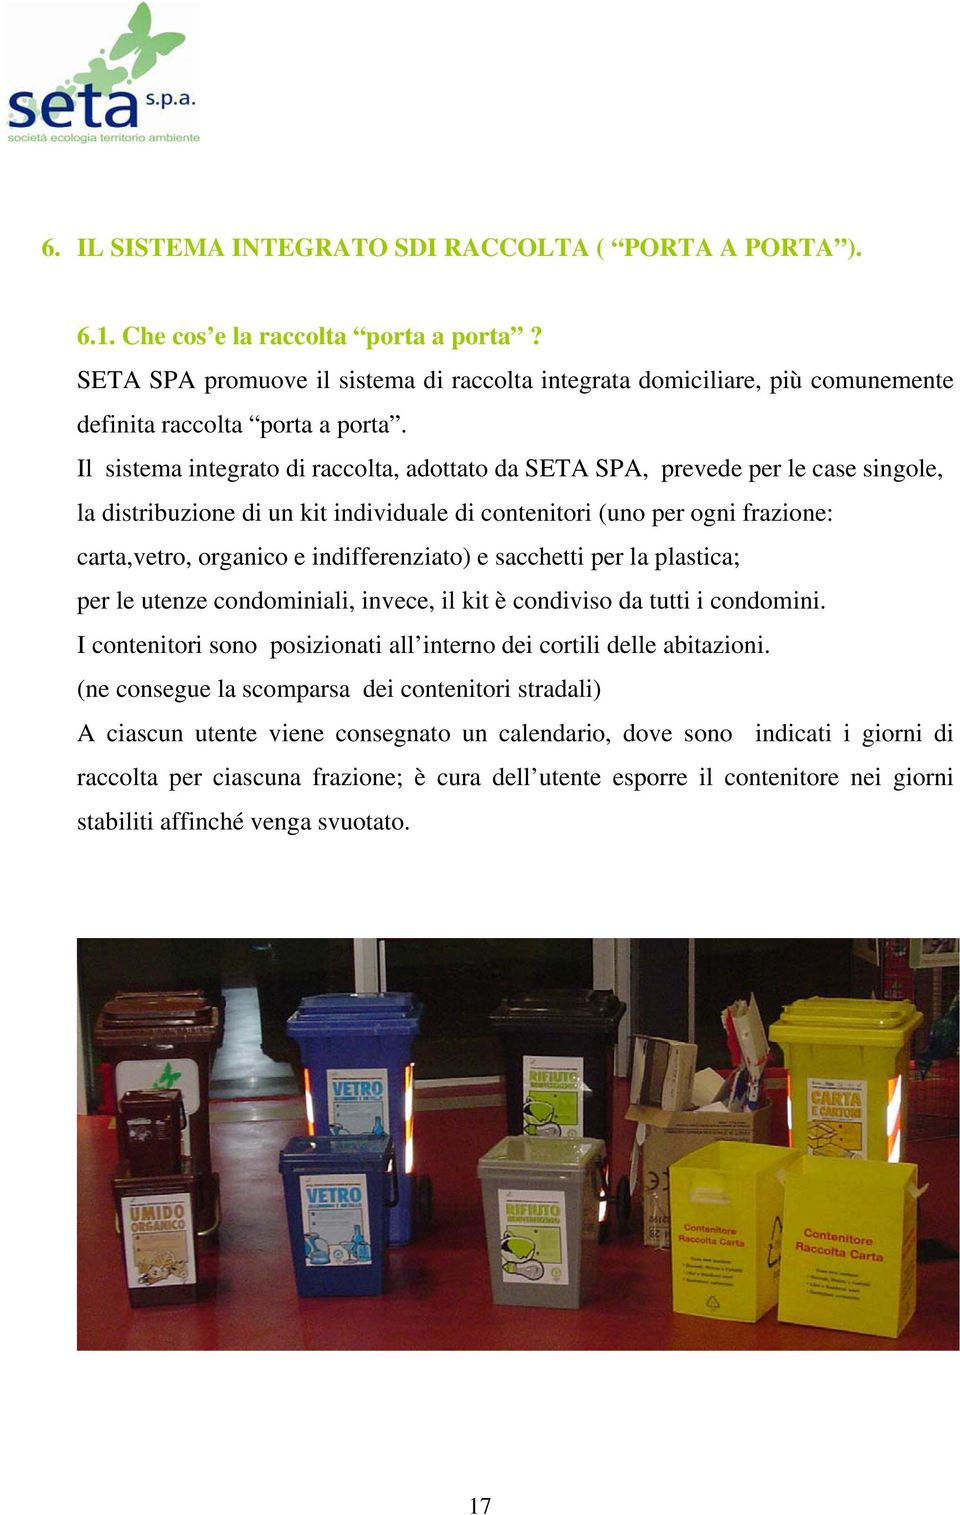 Il sistema integrato di raccolta, adottato da SETA SPA, prevede per le case singole, la distribuzione di un kit individuale di contenitori (uno per ogni frazione: carta,vetro, organico e